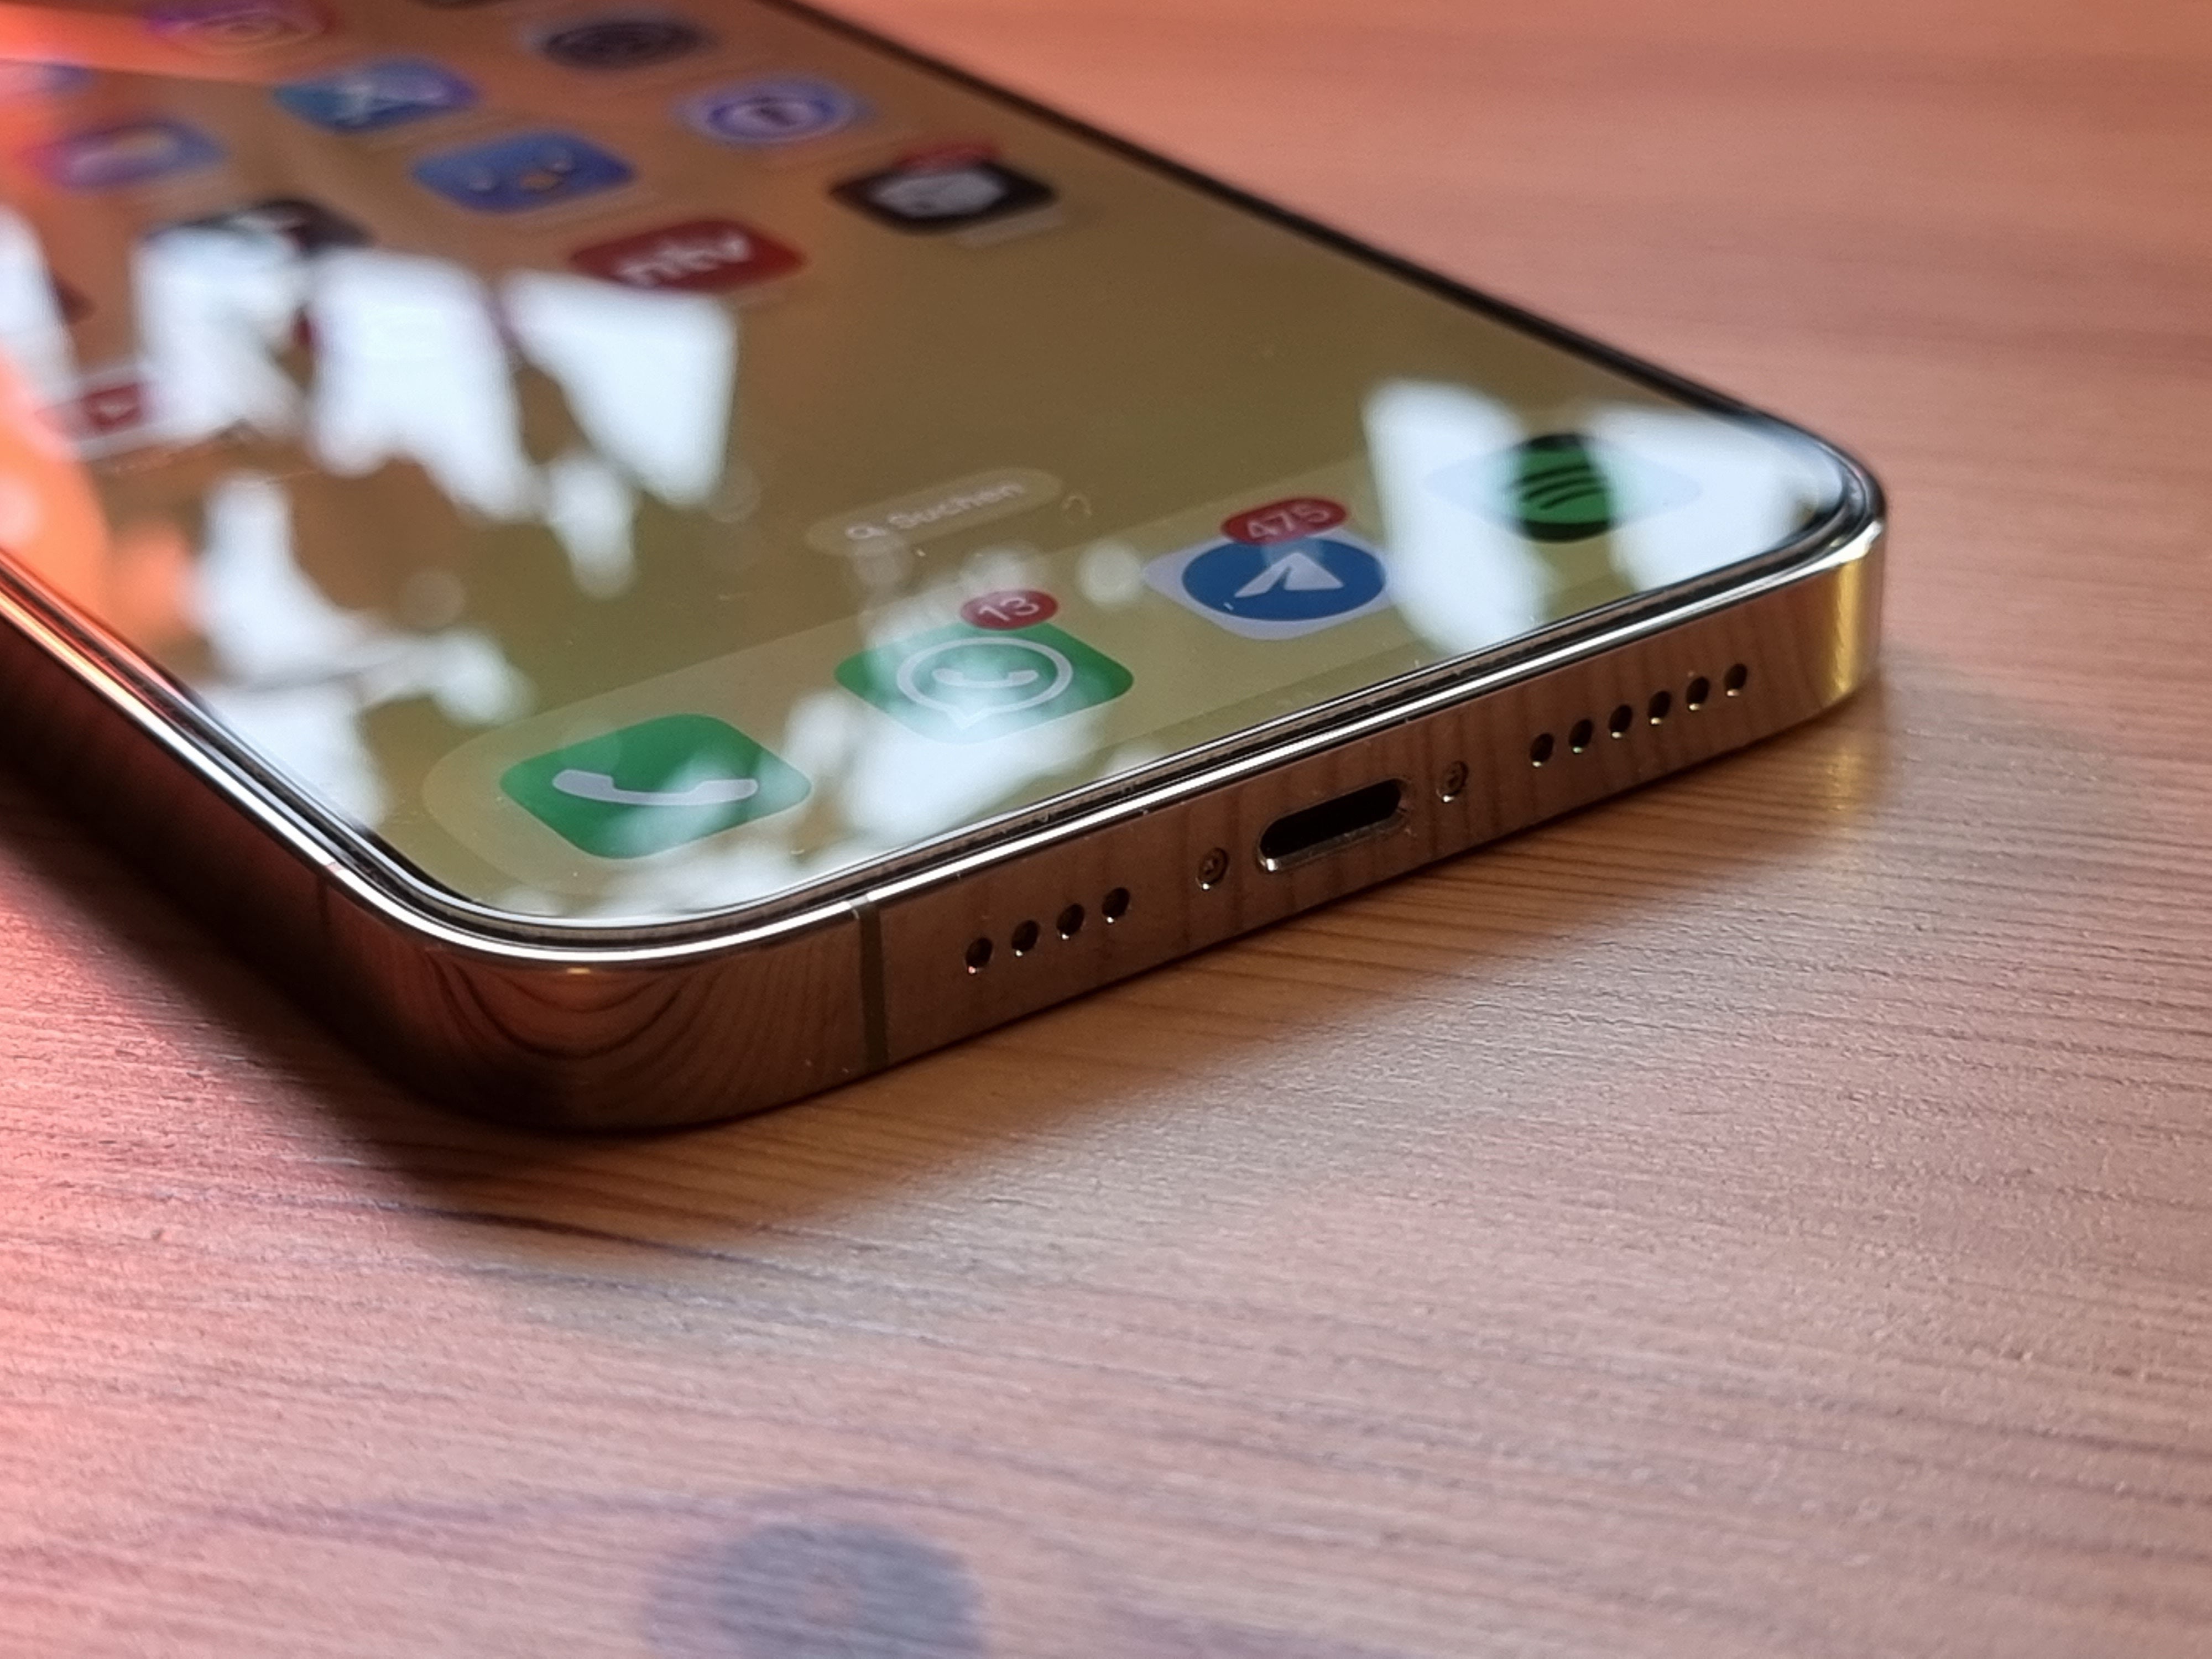 #iPhone mit Lightning oder USB-C: Warum nicht beides?